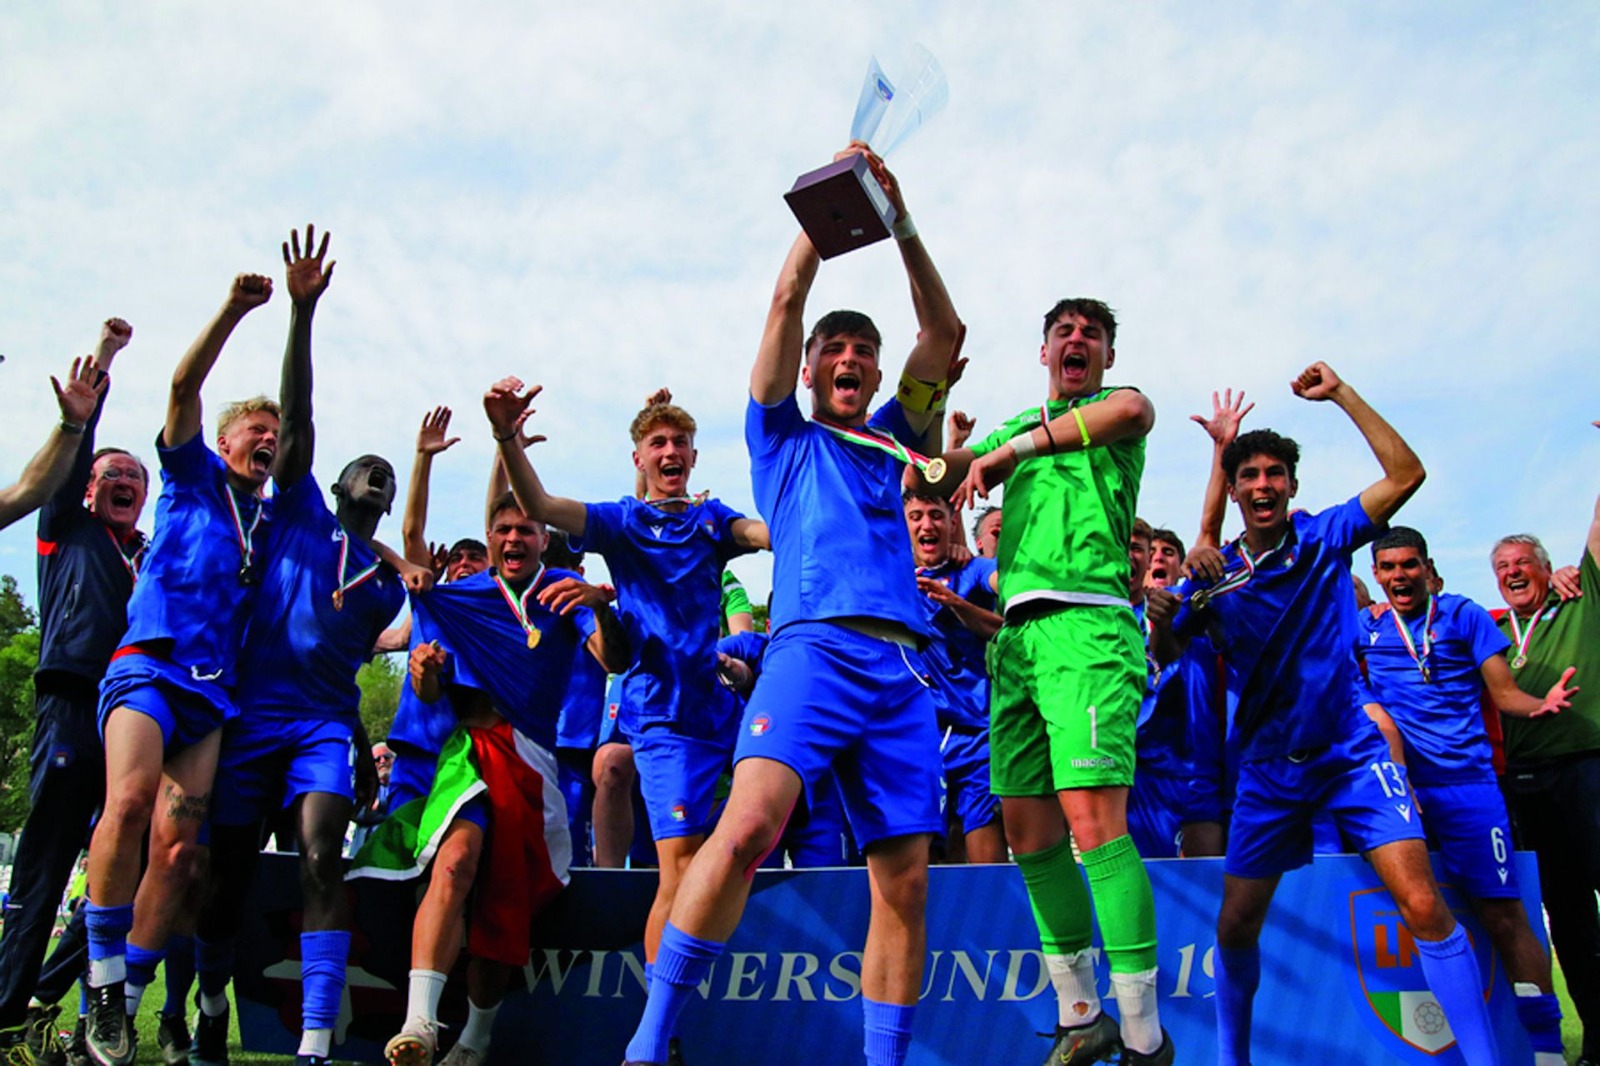 Calcio, la Liguria sul tetto d'Italia: la rappresentativa Under 19 vince il Trofeo delle Regioni dopo 47 anni